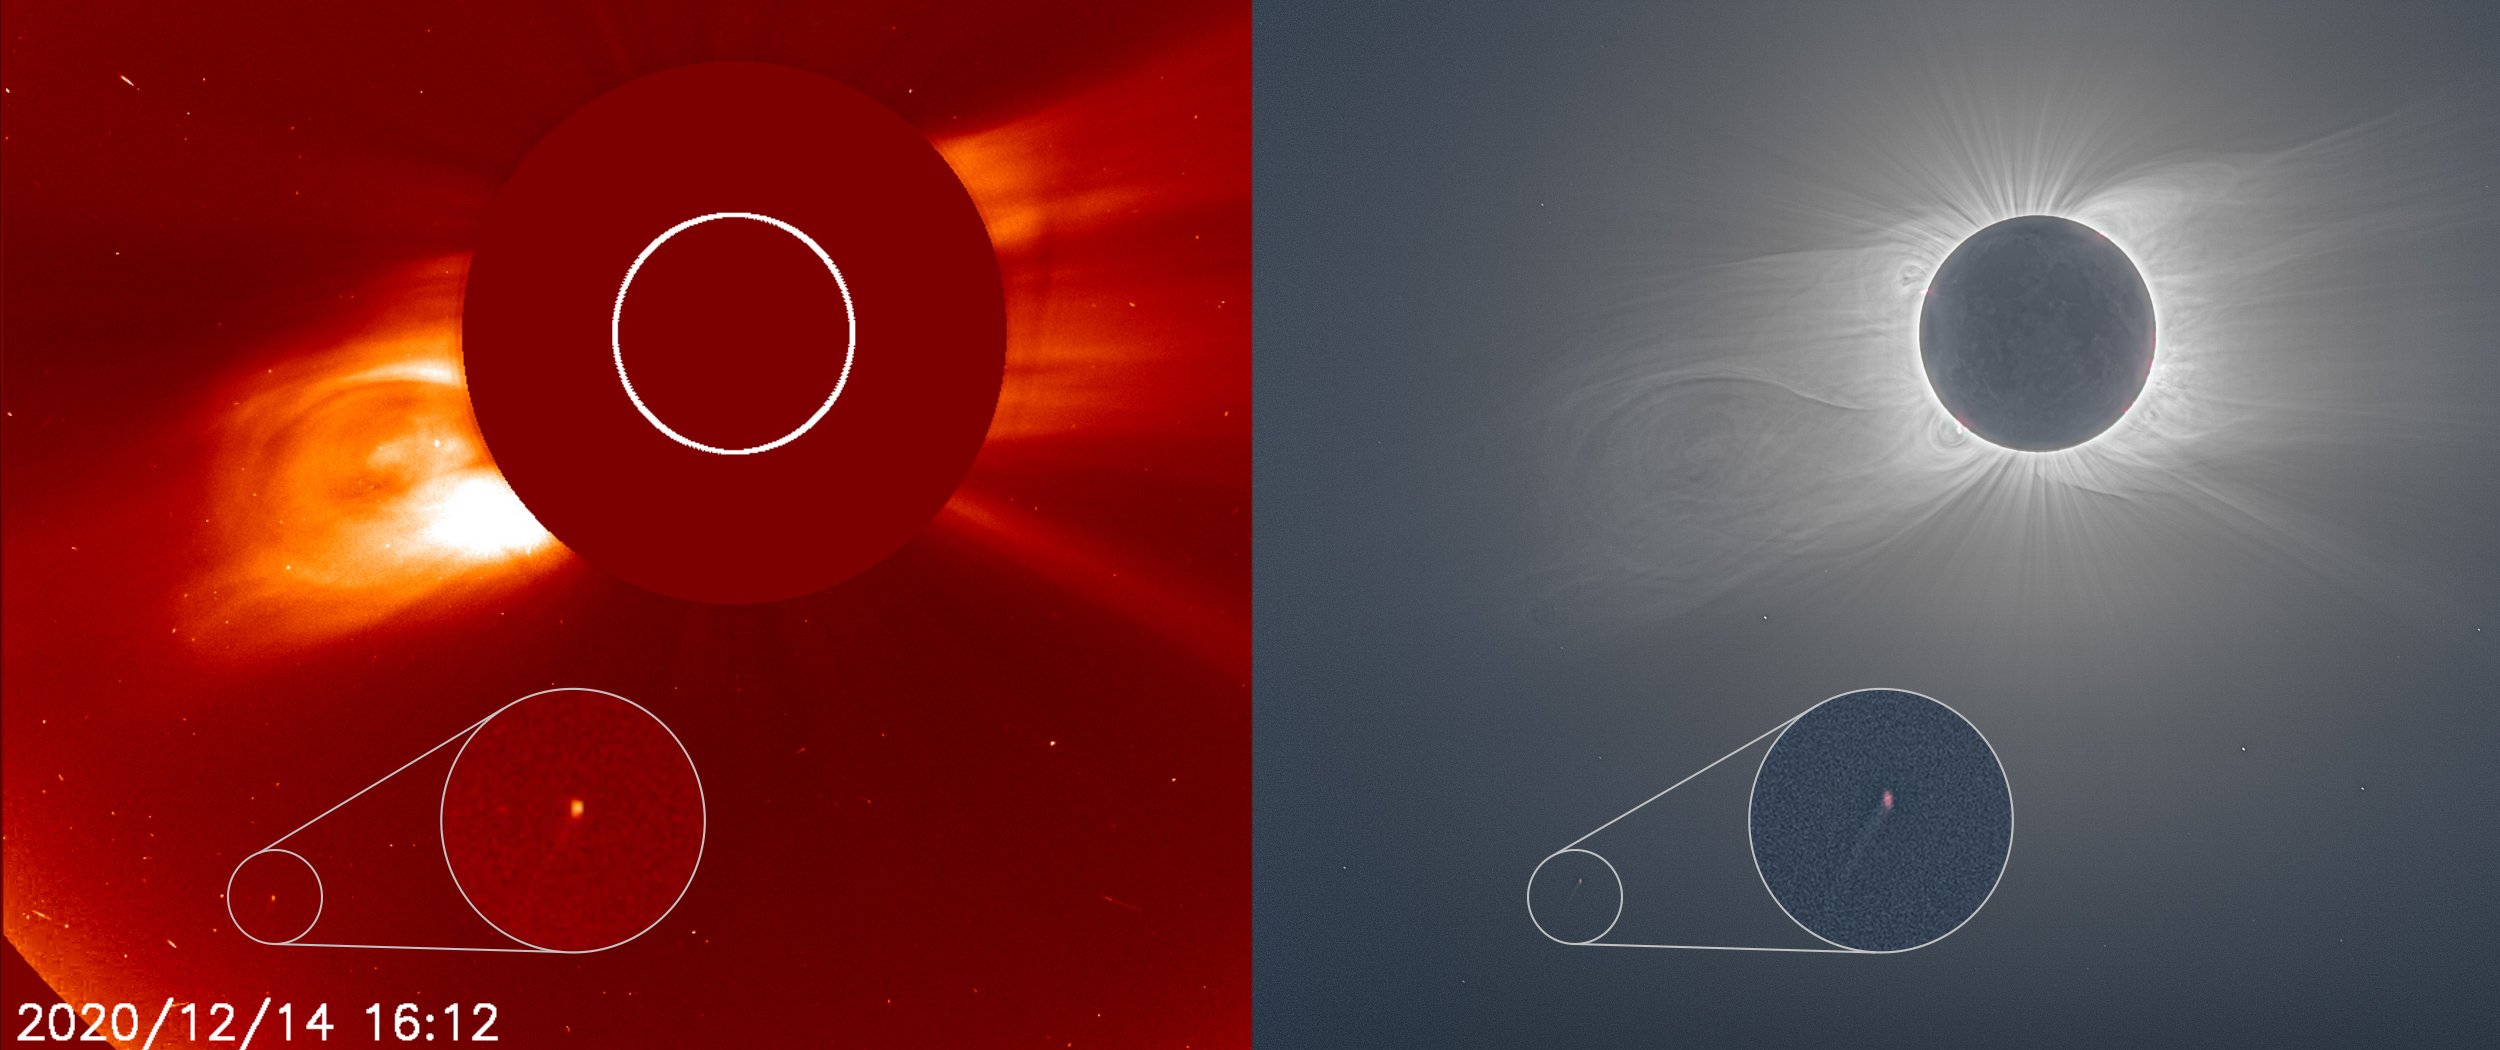 나란히 놓인 두 개의 이미지는 태양 가까이에 있는 혜성을 보여주며, 오른쪽 이미지는 개기일식이 일어나는 동안 밝게 빛나는 태양의 코로나를 보여줍니다.